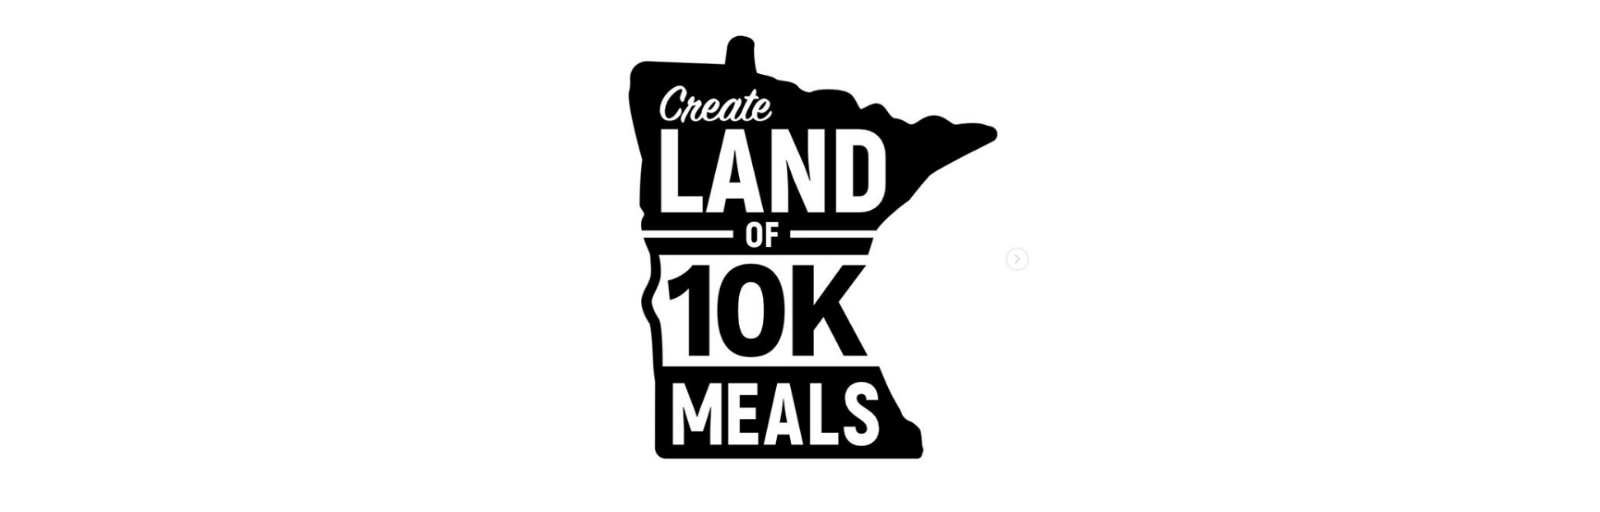 Land of 10k meals